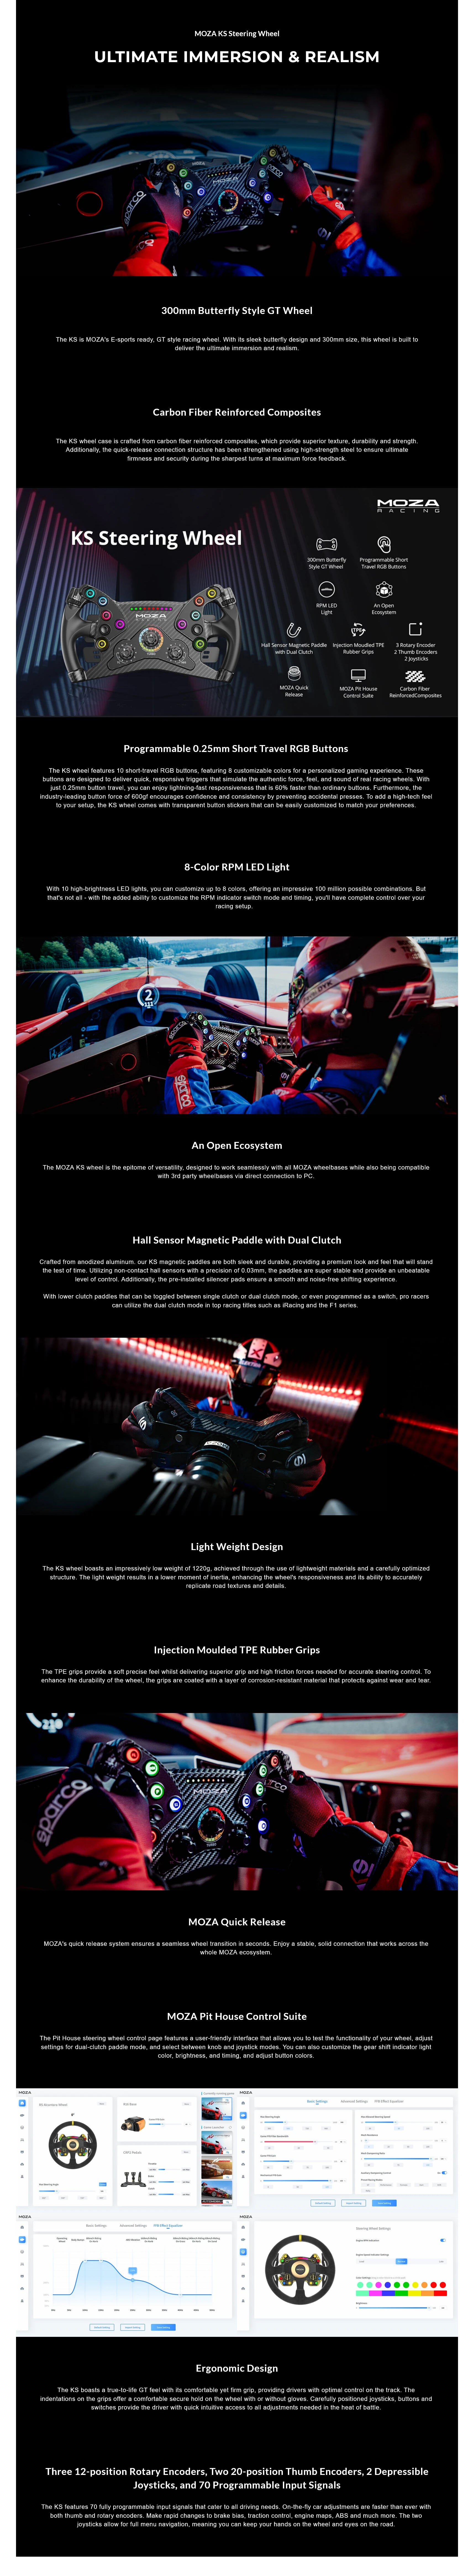 Introducing: MOZA KS GT Racing Wheel